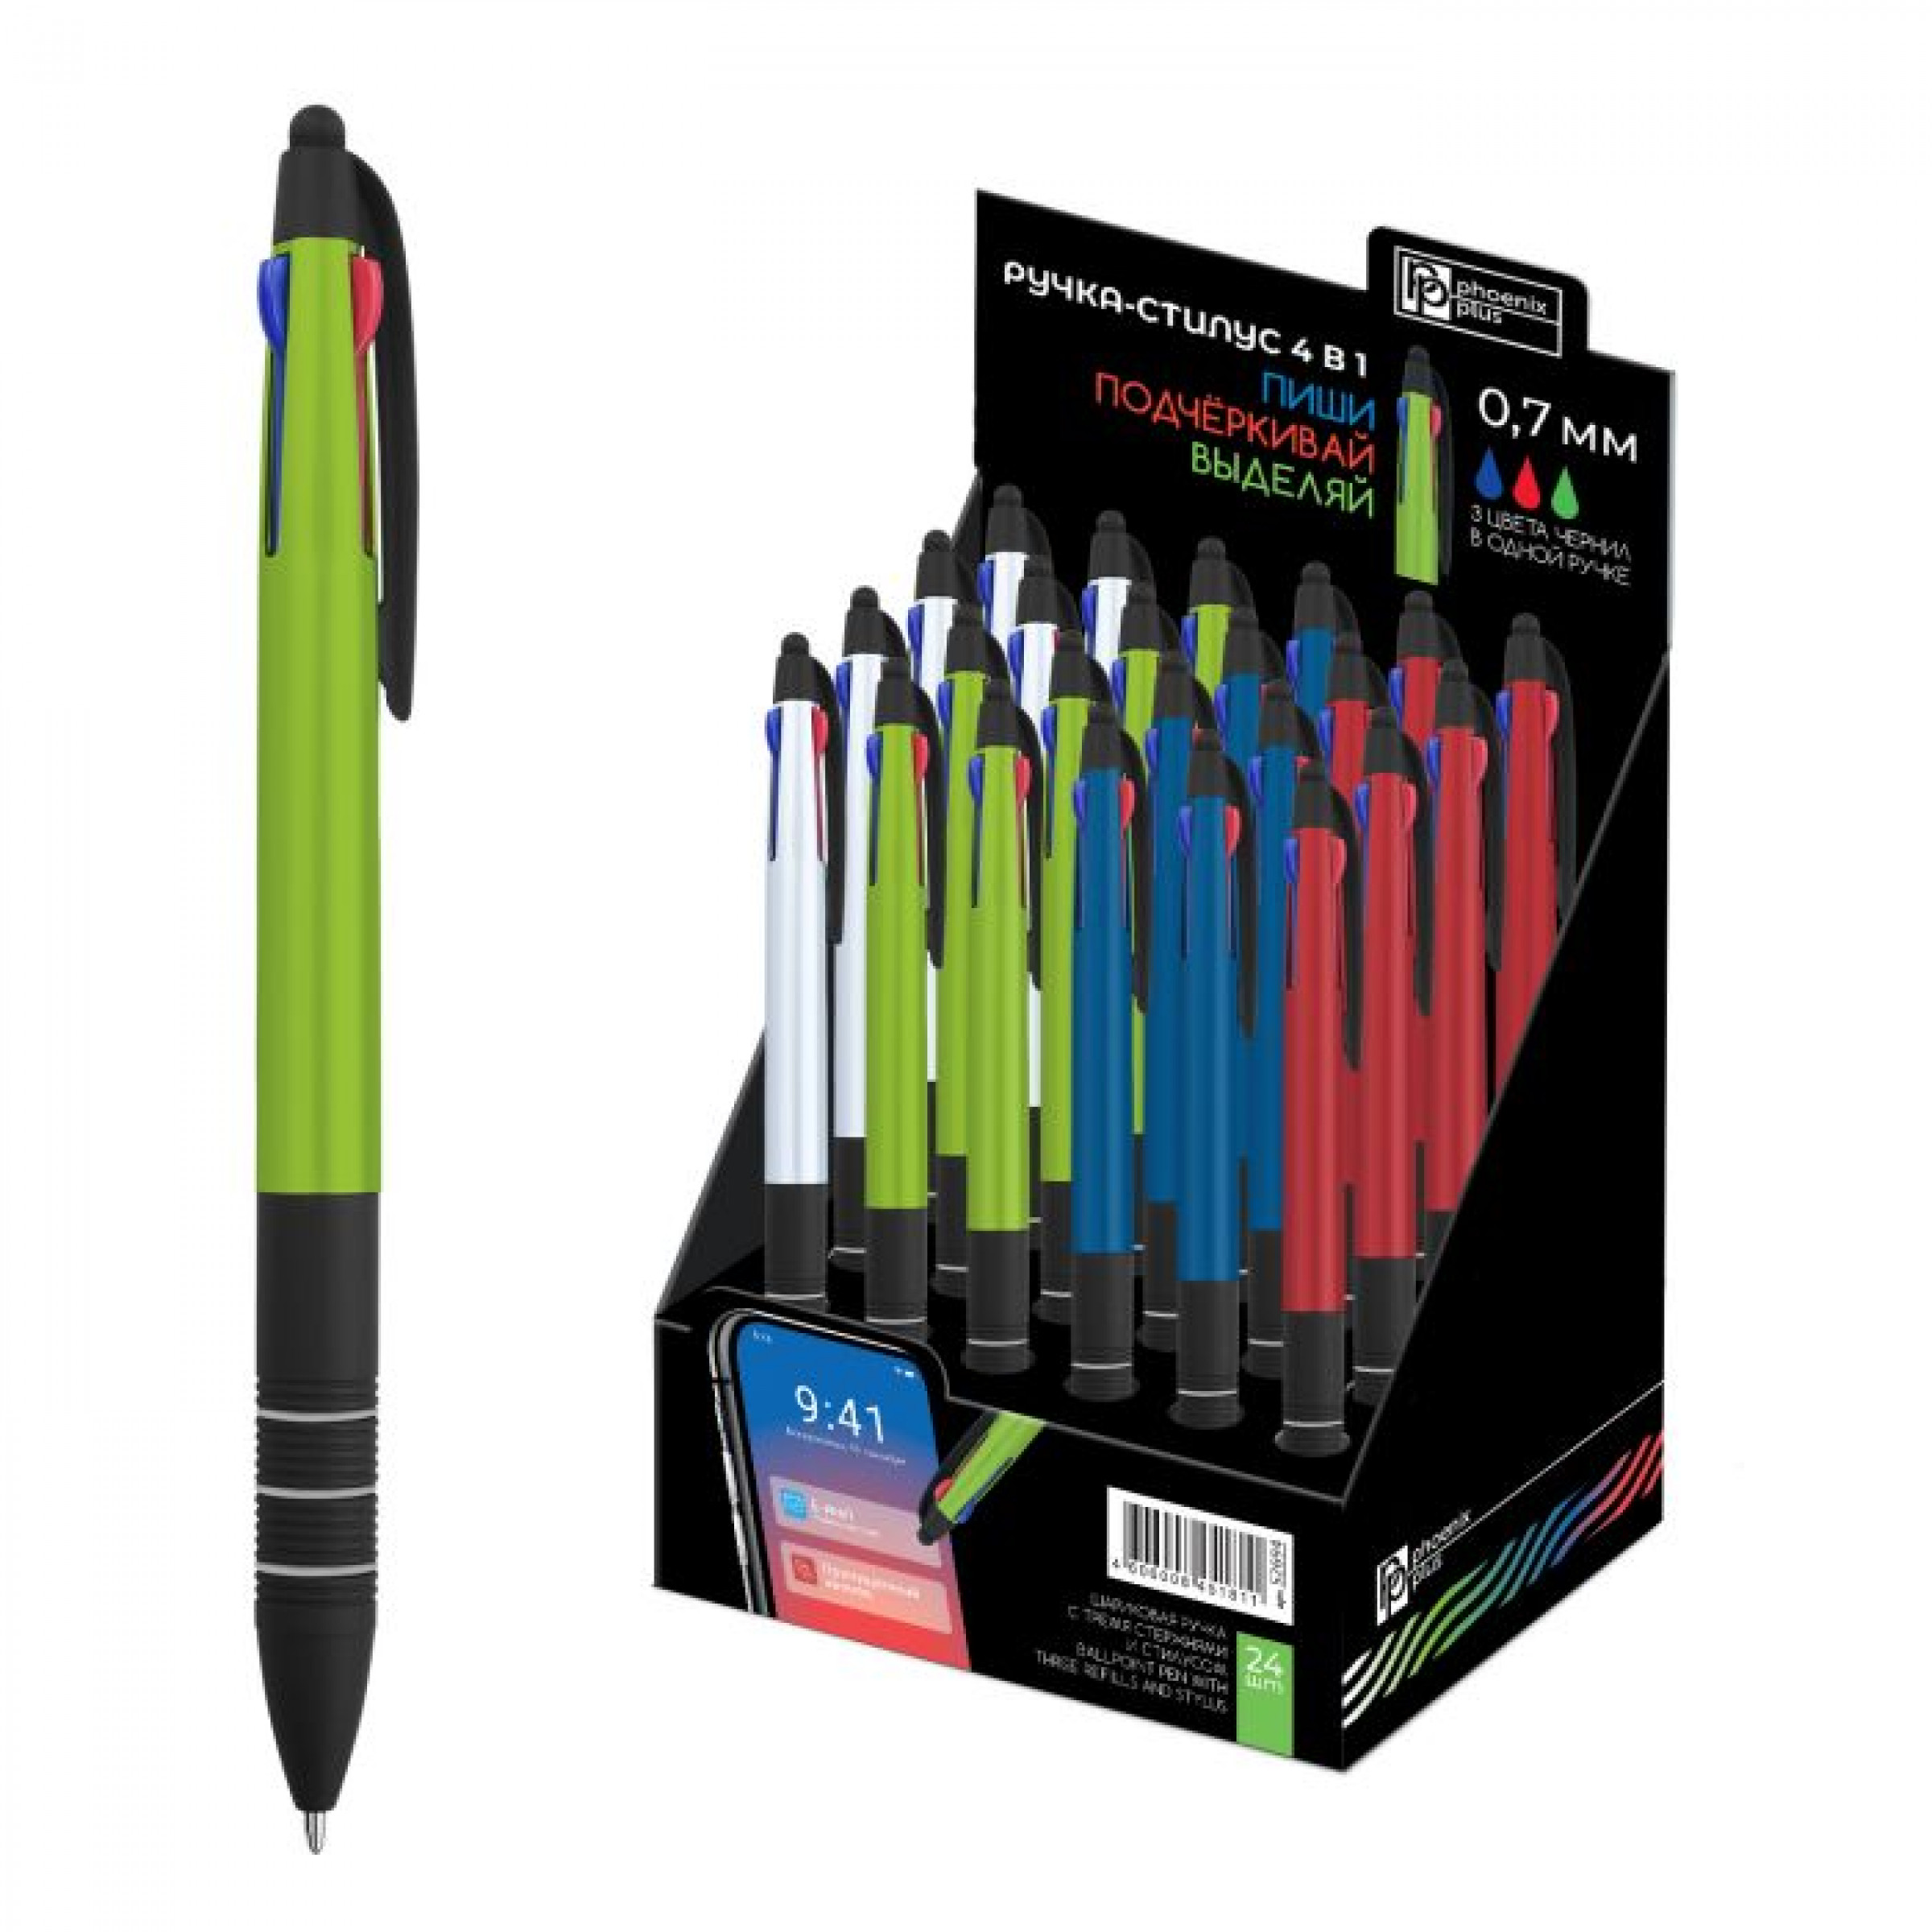 Ручка шариковая Ручка-стилус 3 в 1, зеленый, красный, синий, 0,7 мм, 1 шт